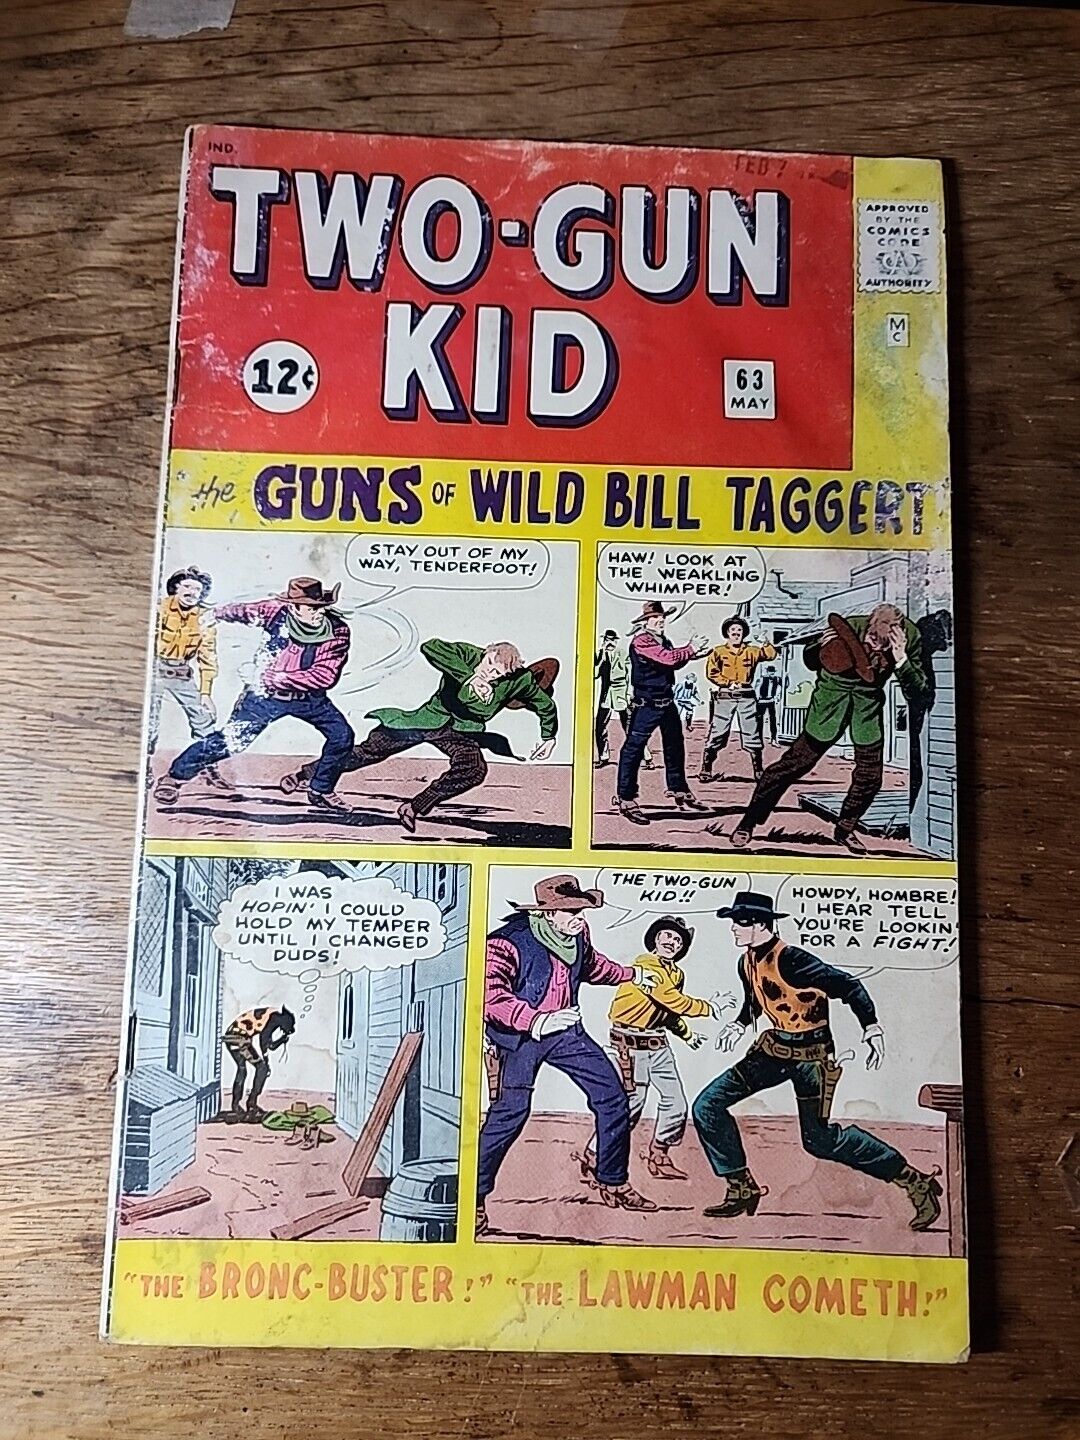 Two-Gun Kid No. 63 May 1963 - Marvel Silver Age Cowboy Comic